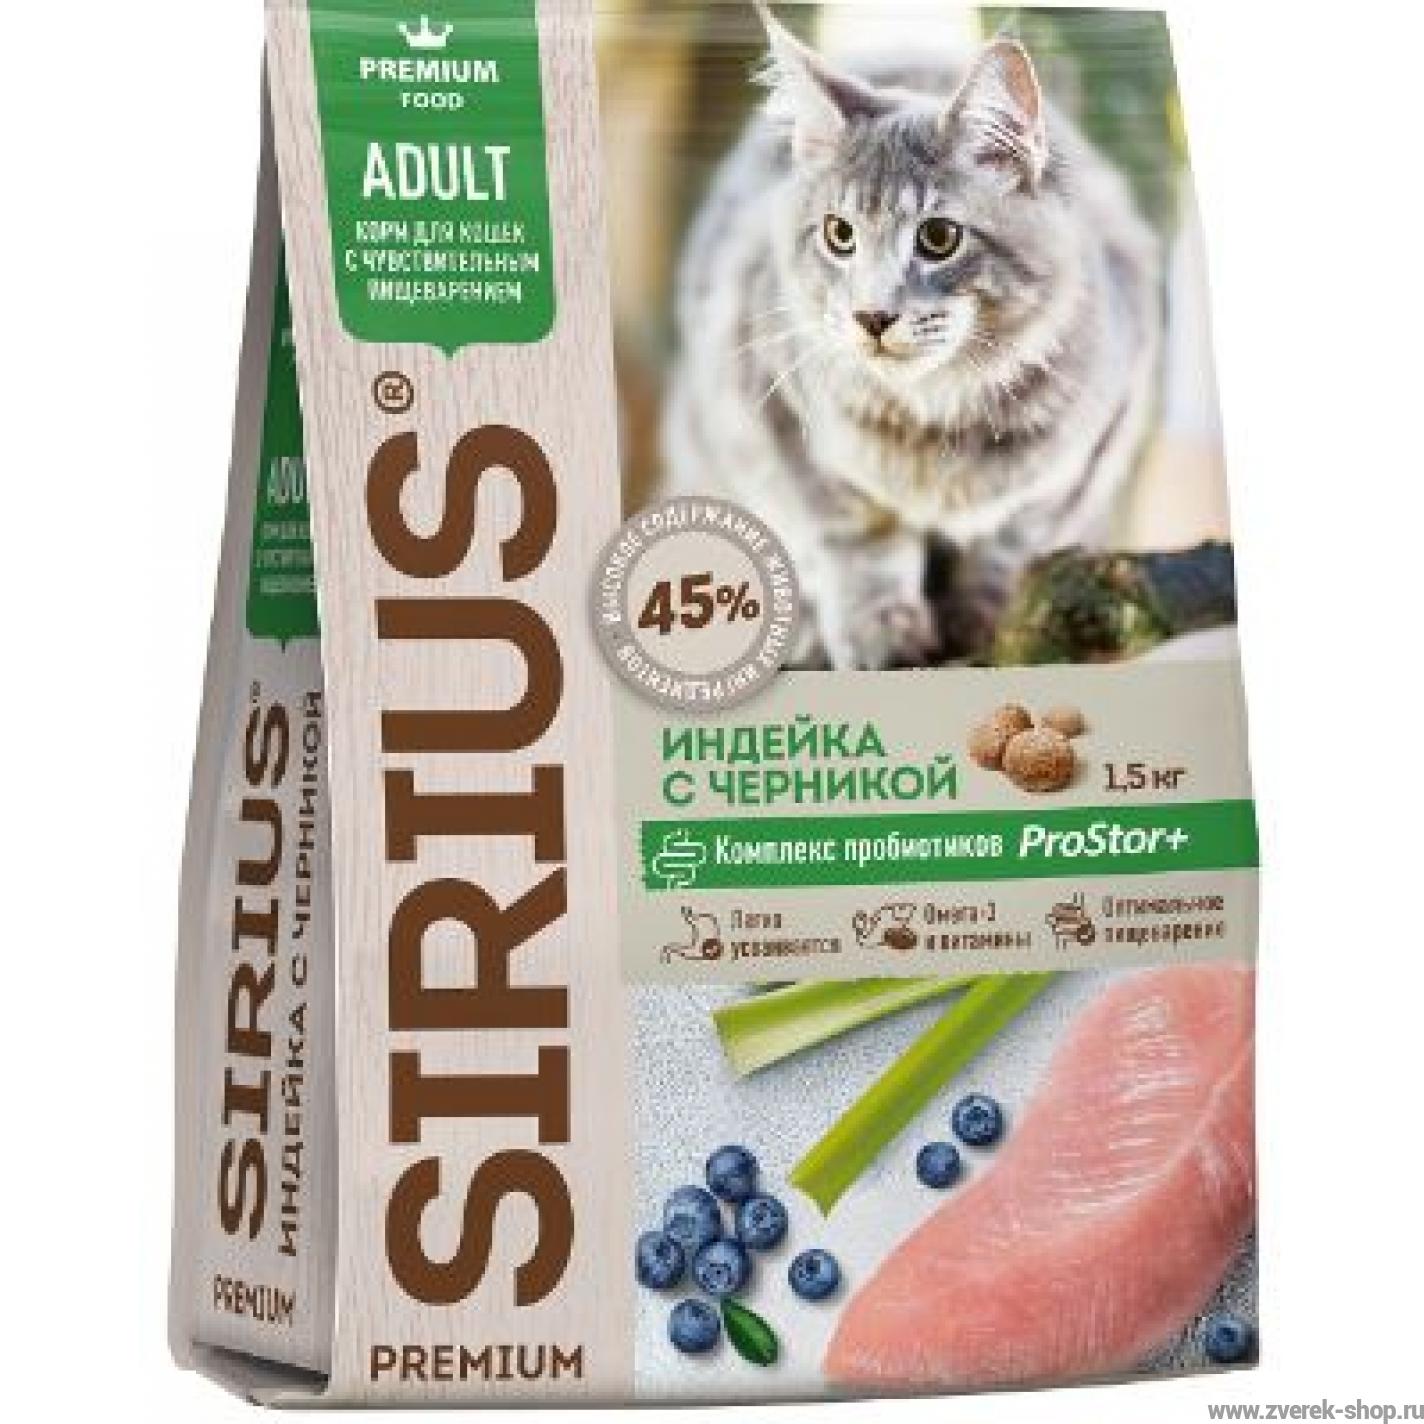 Купить сириус для кошек 10. Корм Сириус для кошек с индейкой. Сириус для кошек Сириус корм. Сириус премиум корм для котят. Sirius для котят 400.